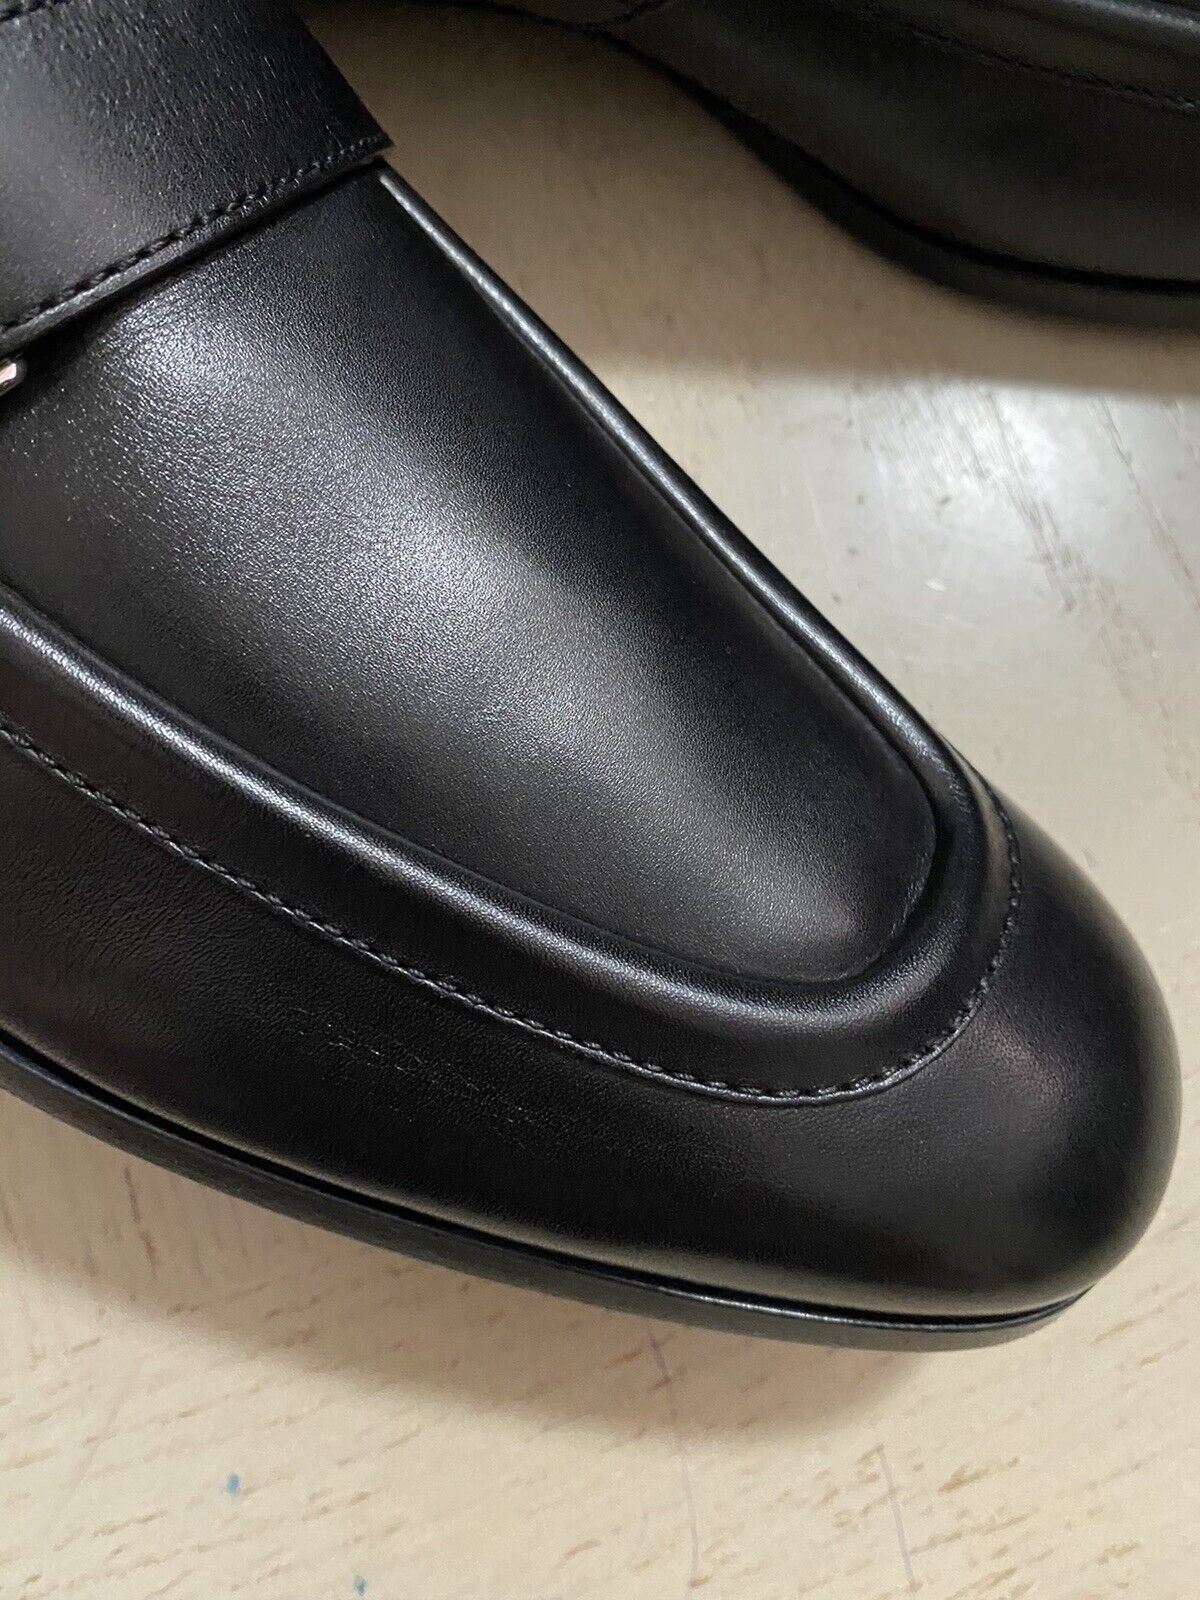 New $795 Ermenegildo Zegna Moccasin Leather Loafers Shoe Black 13 US Italy